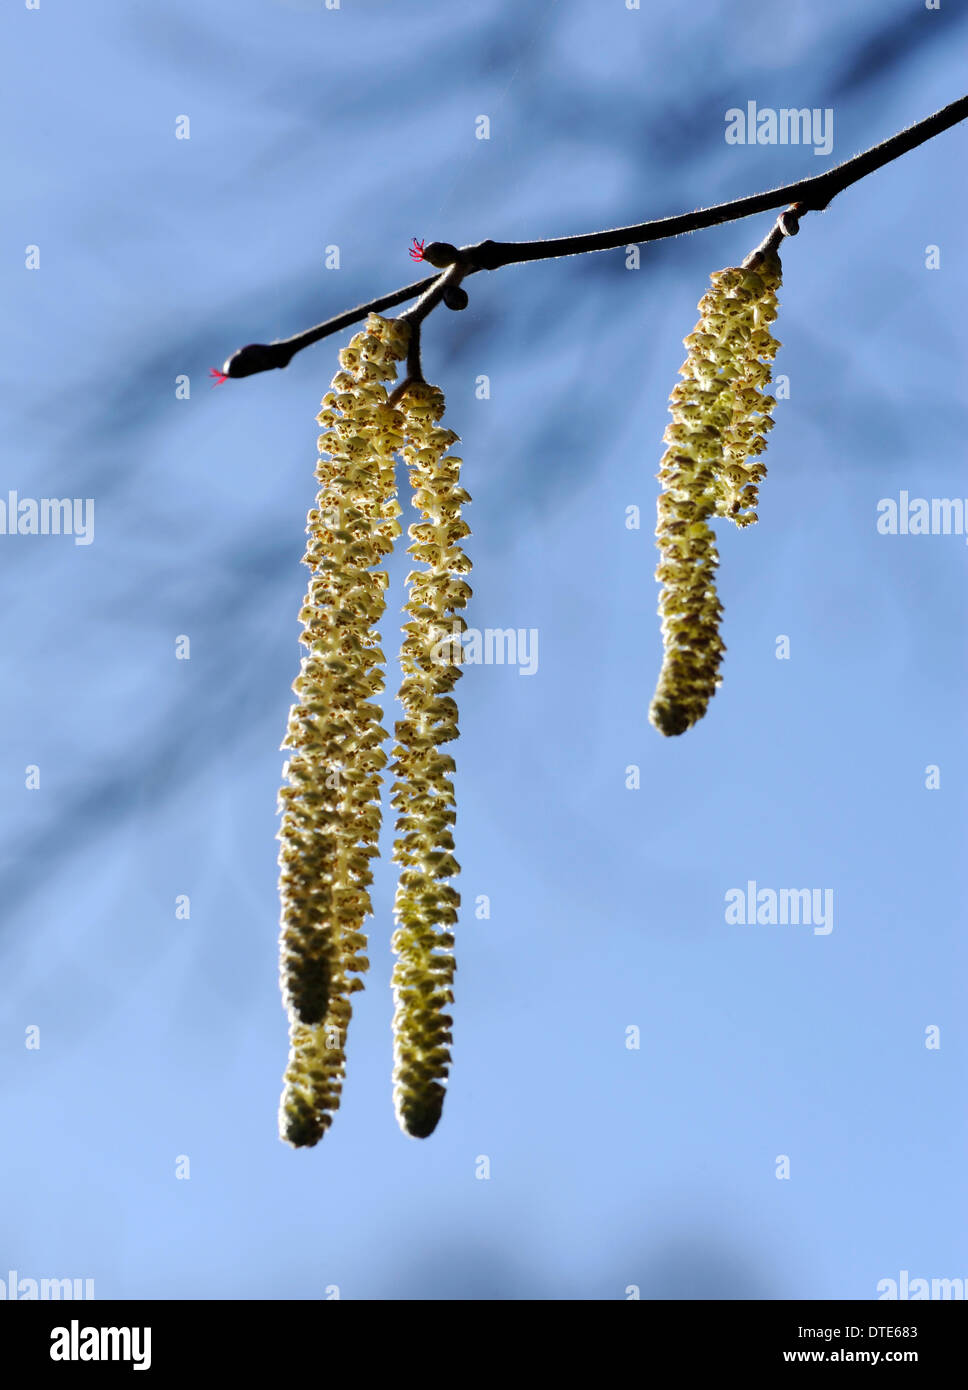 Kätzchen oder Lämmer Schwänzen, die männlichen Blüten von der gemeinsamen Hecke Baum Hasel (Corylus Avellana), zeigen, dass der Frühling nicht weit entfernt ist. Begebury Wald, Kent. 16 Feb 14 Stockfoto